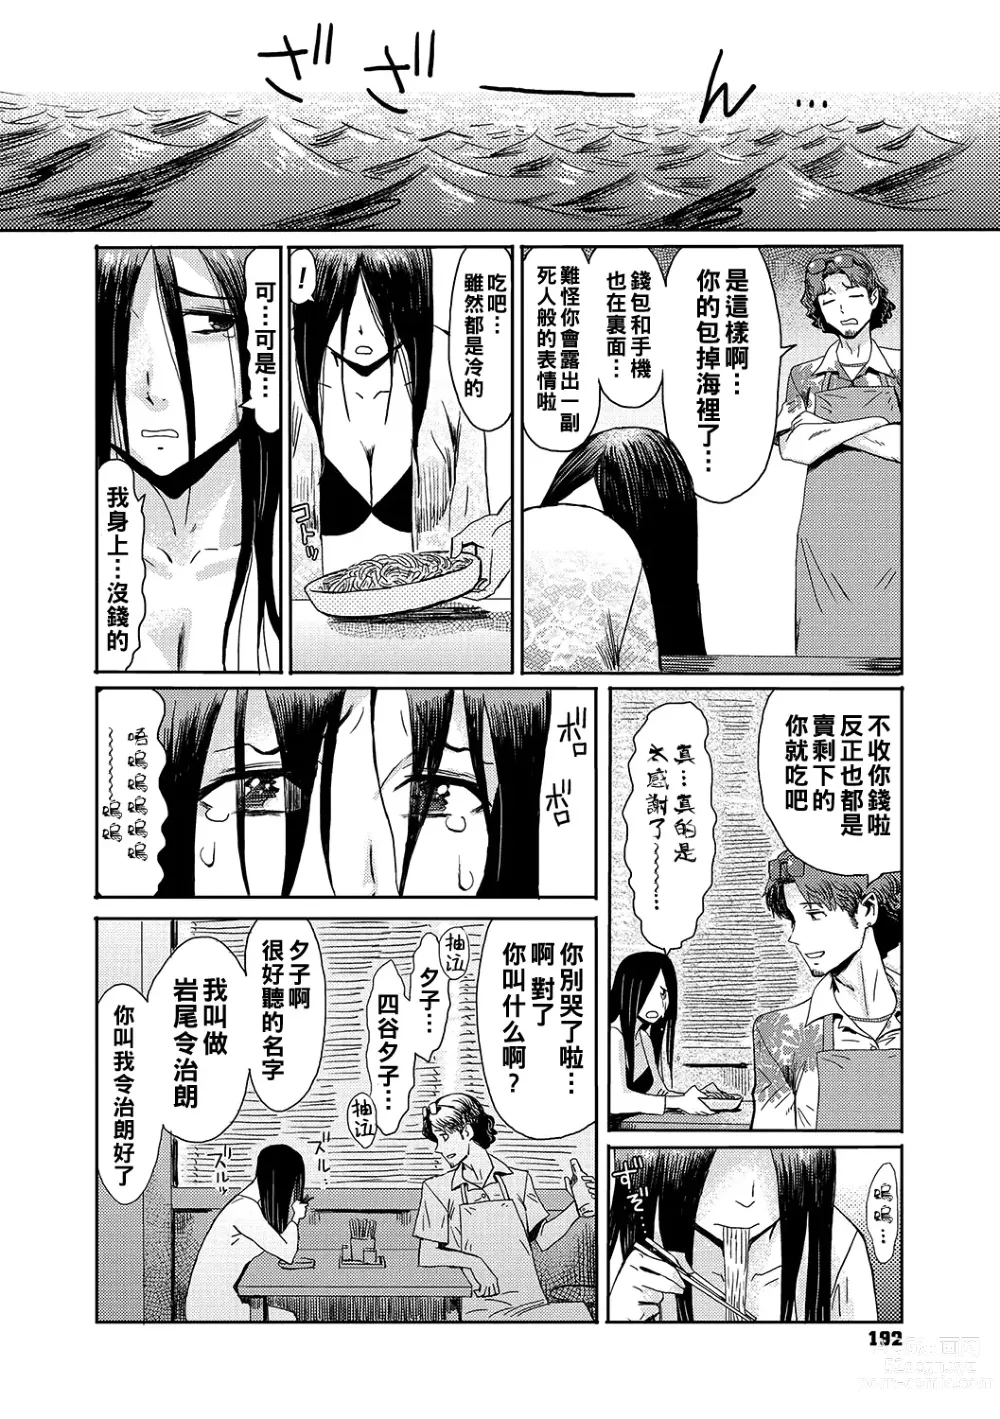 Page 2 of manga Natsu no Shiosai